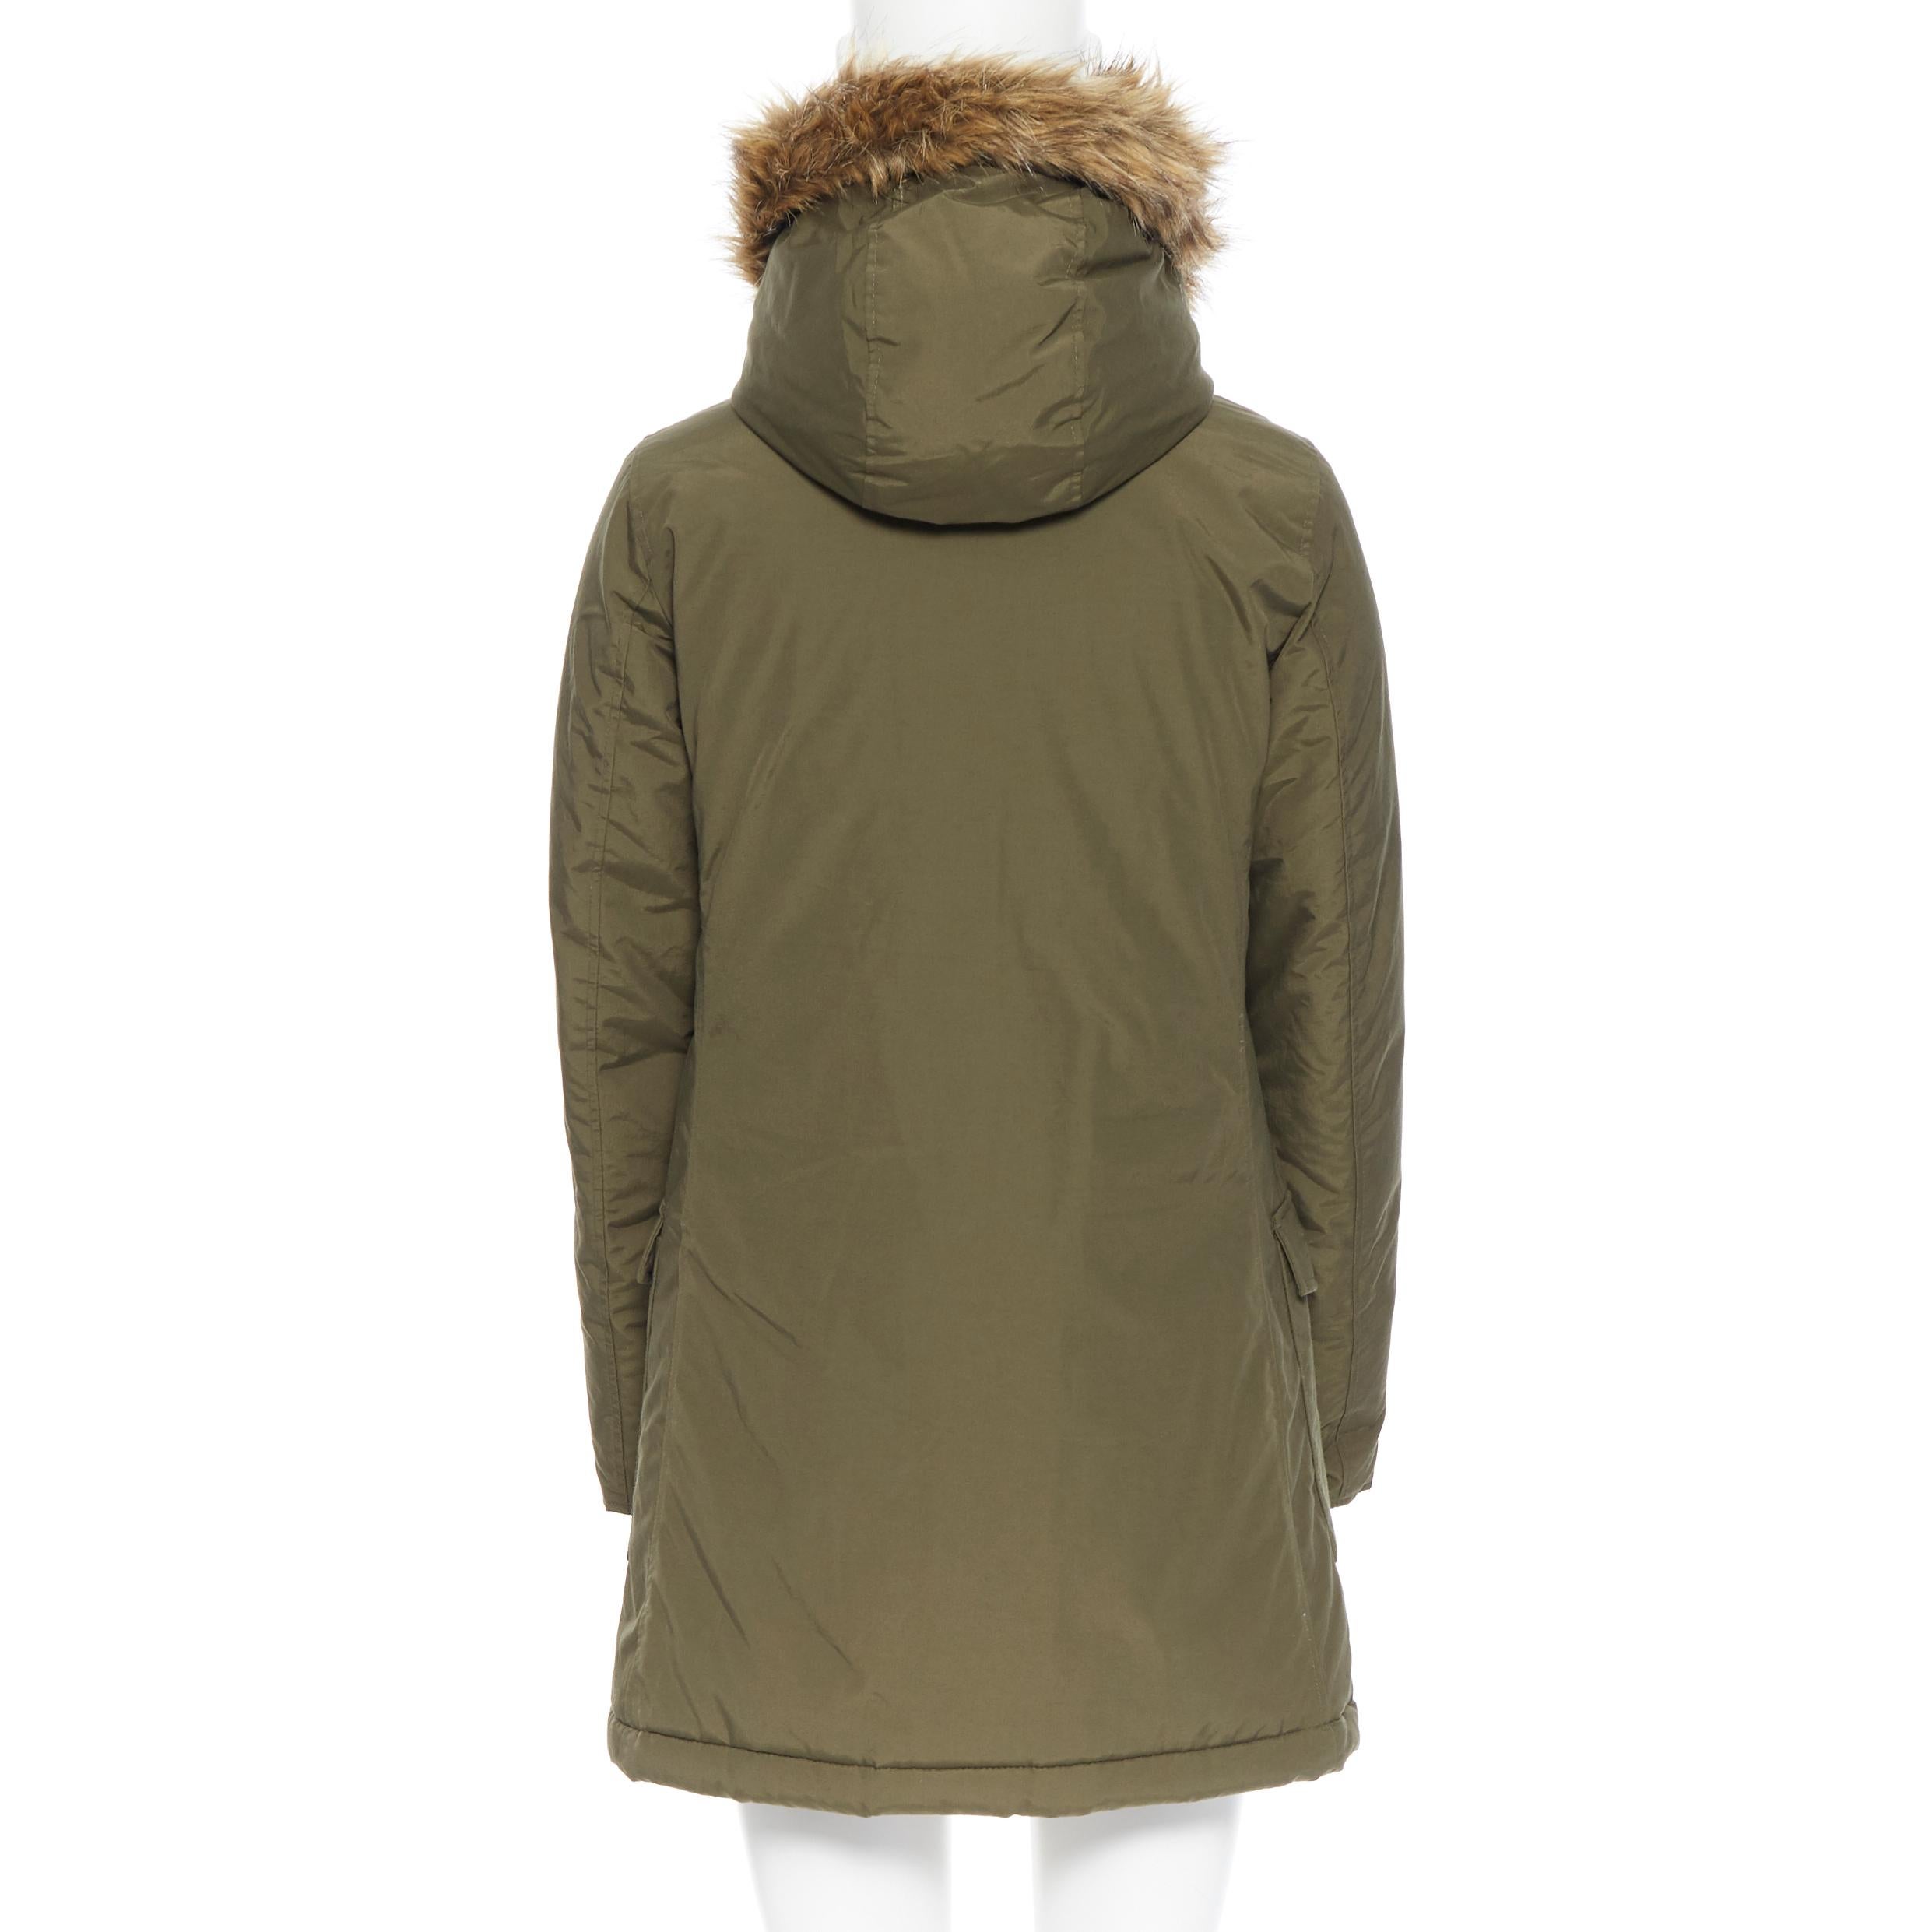 Women's WOOLRICH olive green raccoon fur trimmed hood down padded winter coat jacket XS